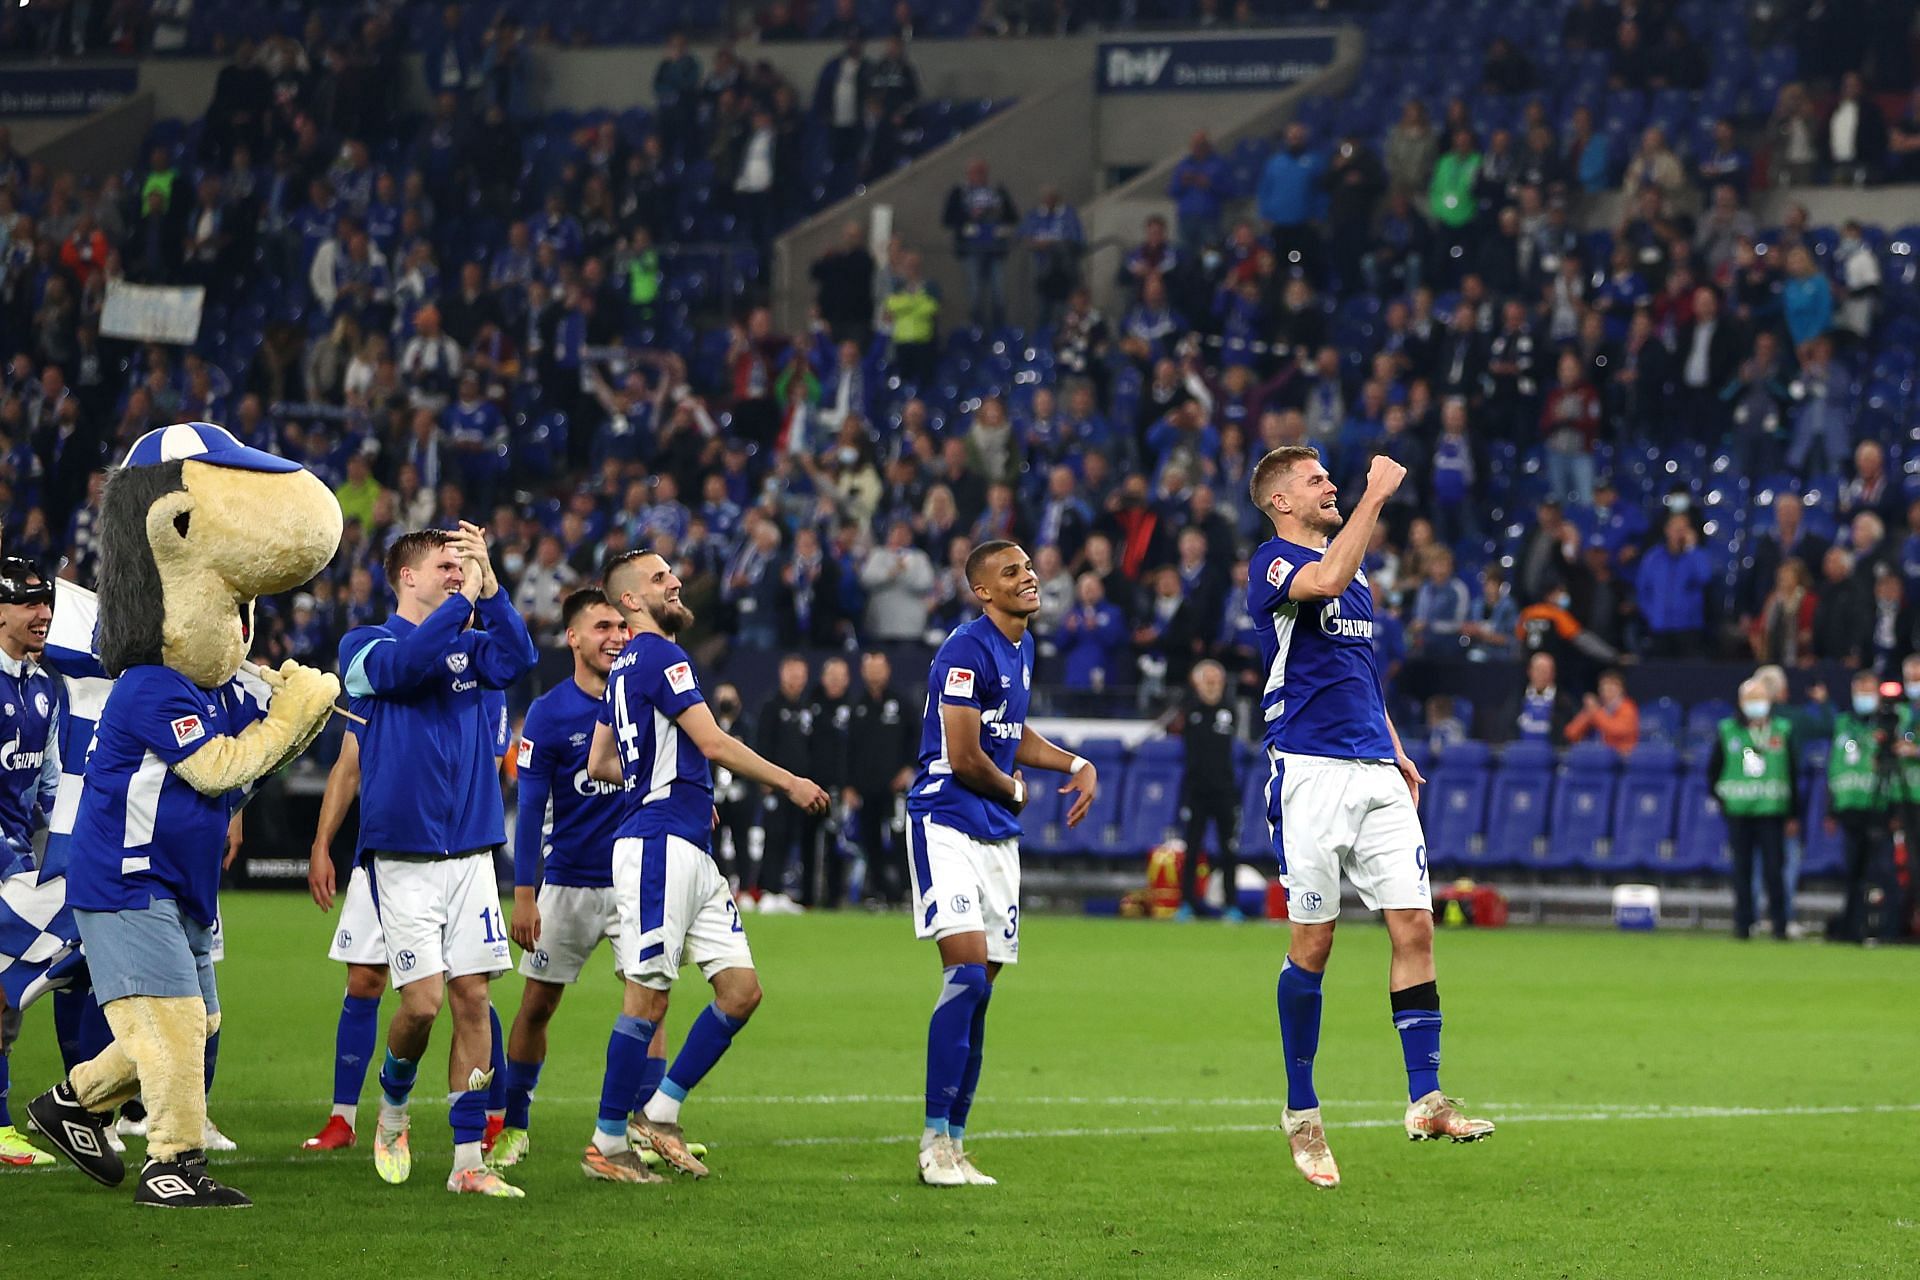 FC Schalke 04 v Hannover preview - 2. Bundesliga